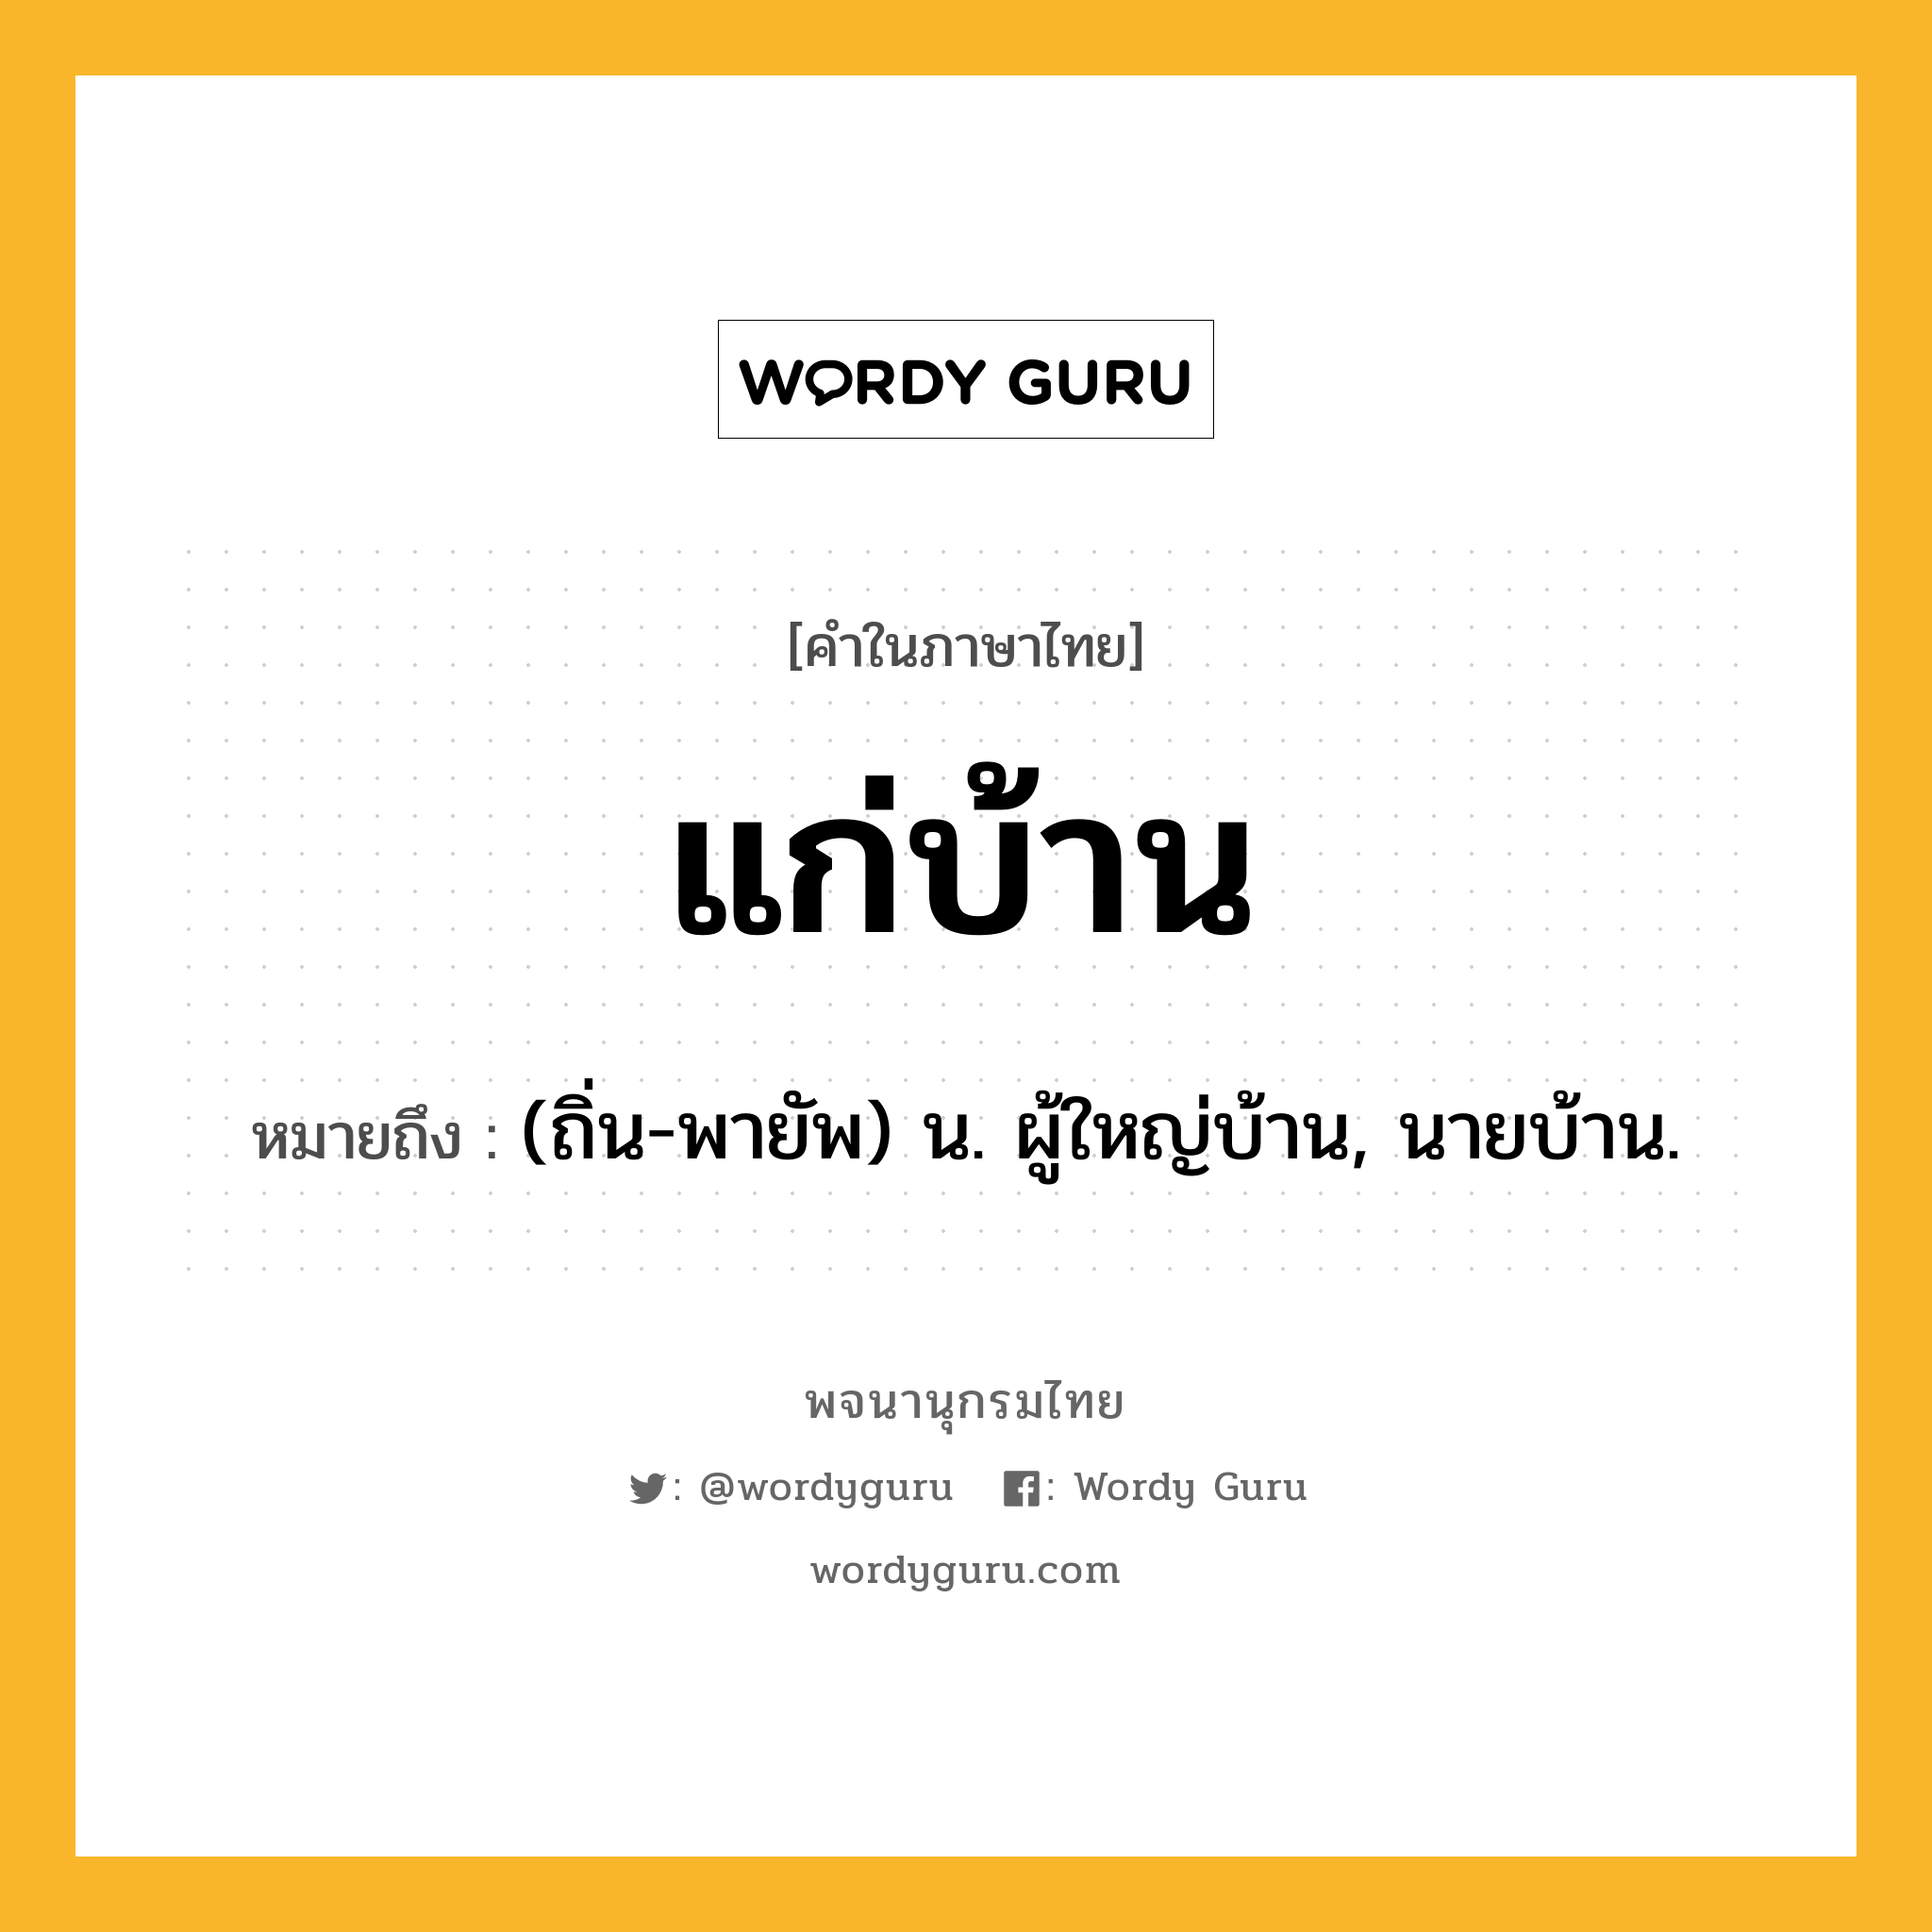 แก่บ้าน หมายถึงอะไร?, คำในภาษาไทย แก่บ้าน หมายถึง (ถิ่น-พายัพ) น. ผู้ใหญ่บ้าน, นายบ้าน.